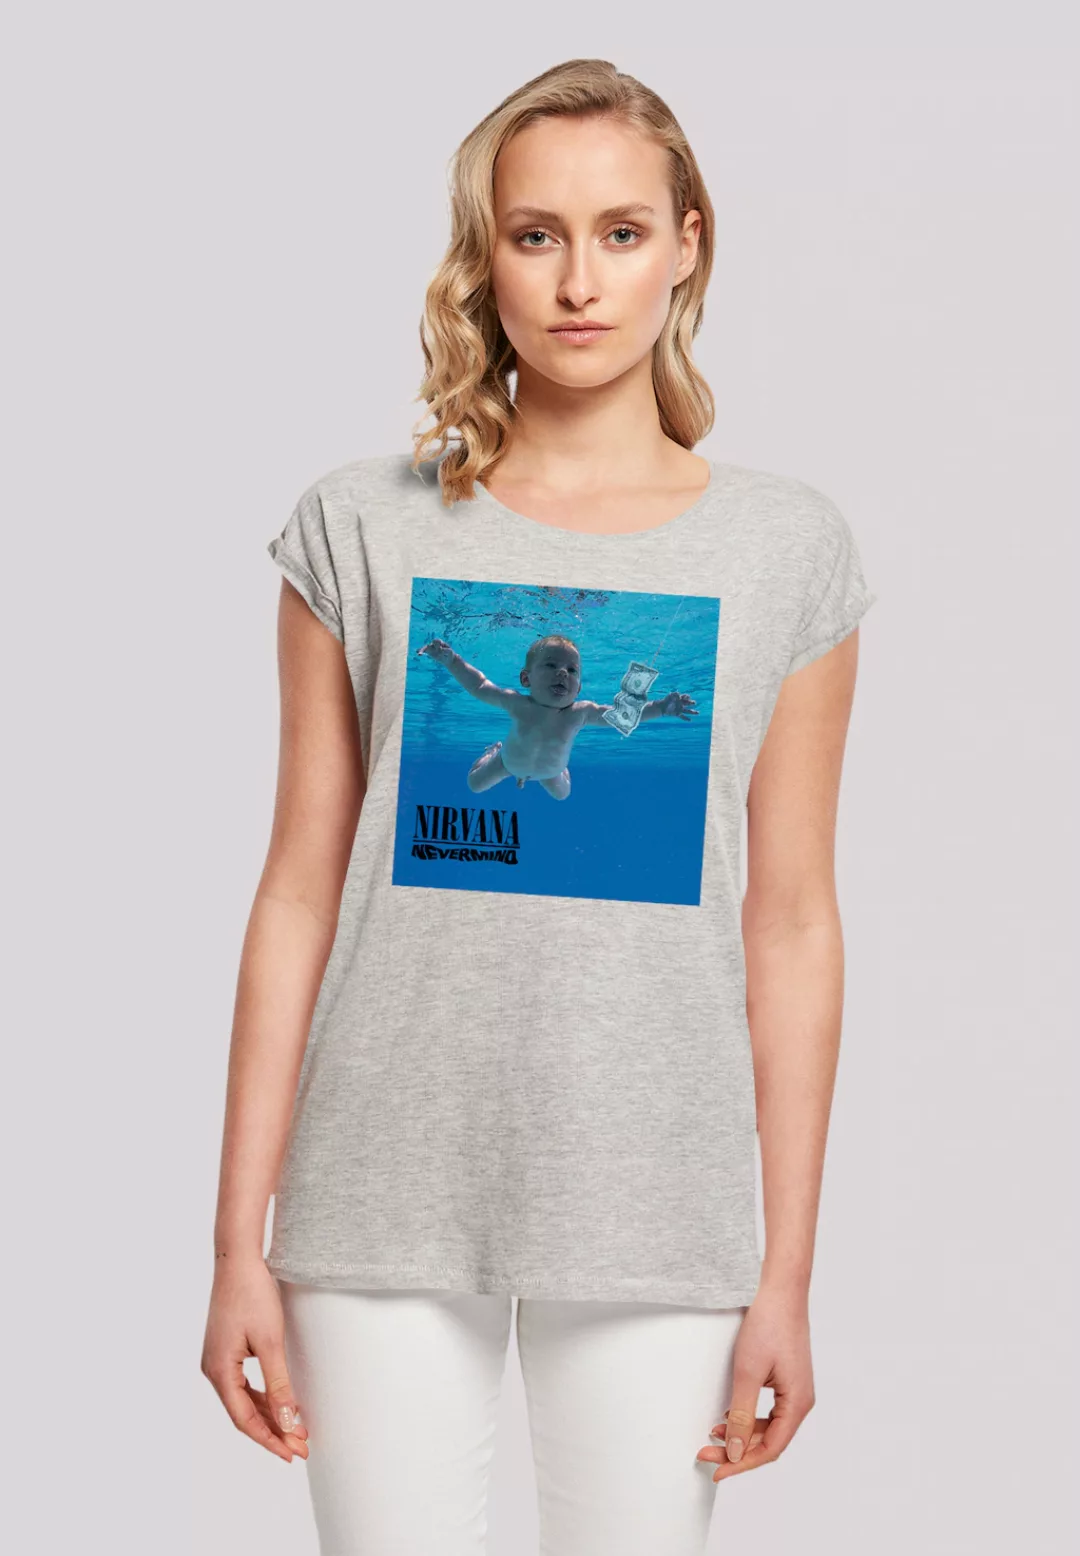 F4NT4STIC T-Shirt "Nirvana Rock Band Nevermind Album", Premium Qualität günstig online kaufen